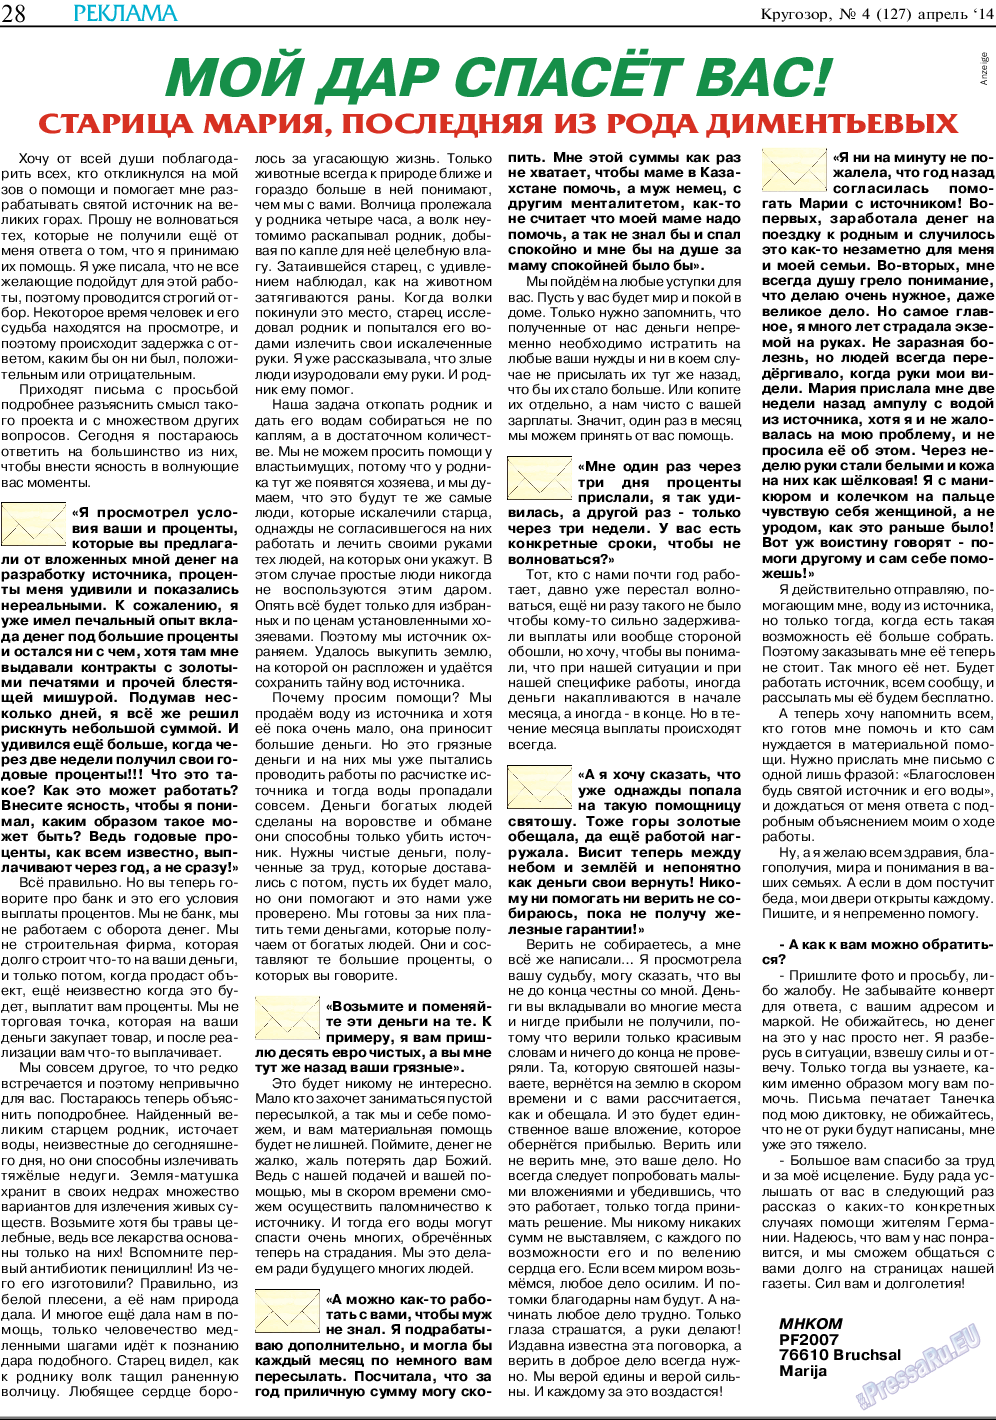 Кругозор, газета. 2014 №4 стр.28